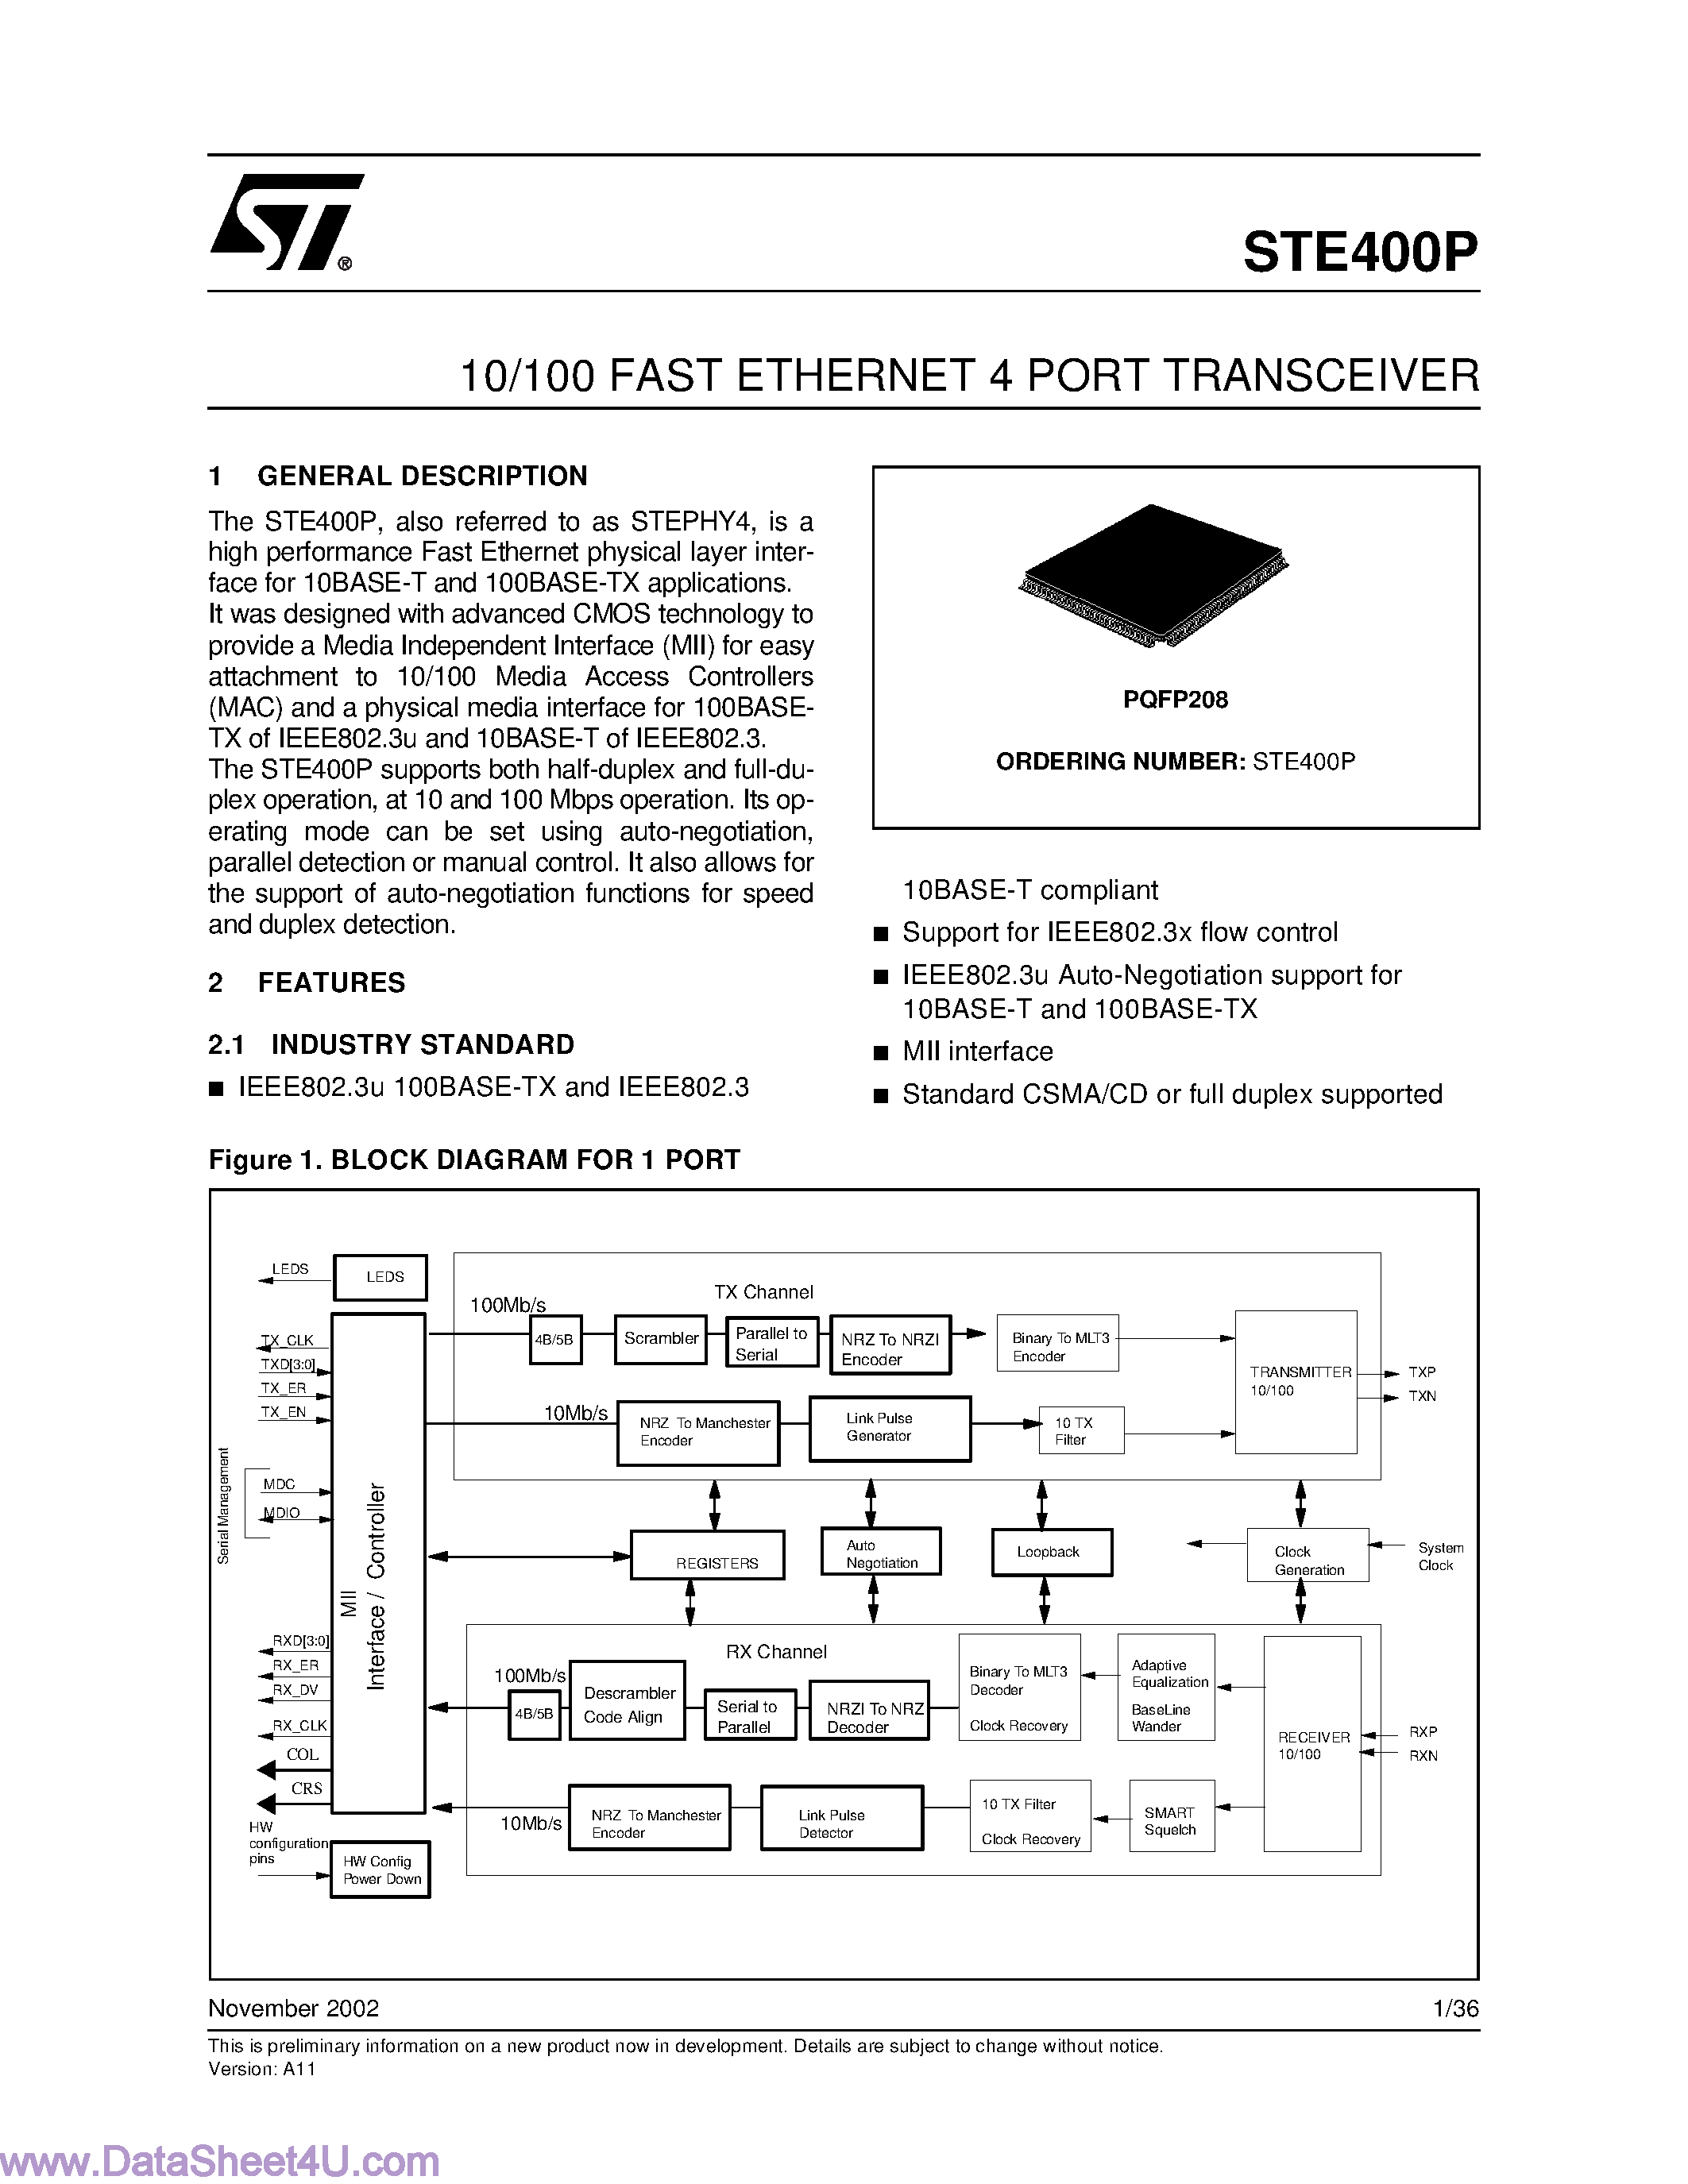 Даташит STE400P - 10/100 Fast Ethernet 4 Port Transceiver страница 1